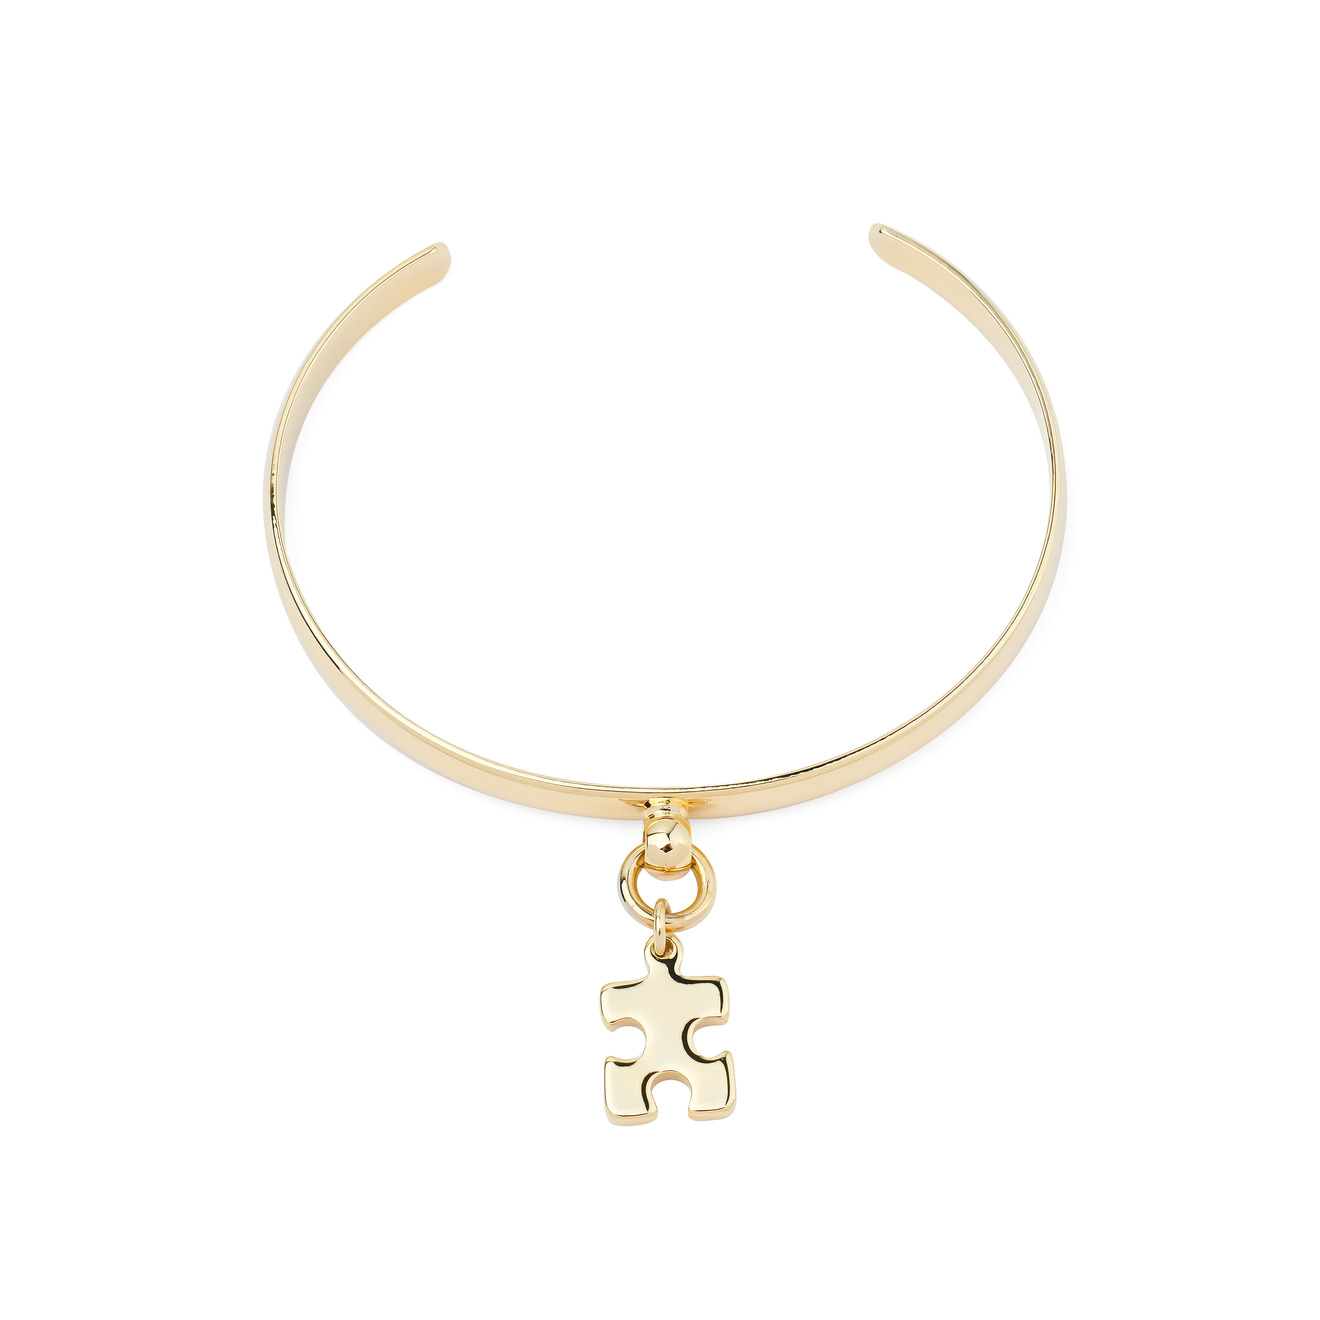 Aqua Золотистый браслет с подвеской-пазлом aqua золотистый браслет с подвесками пазлами